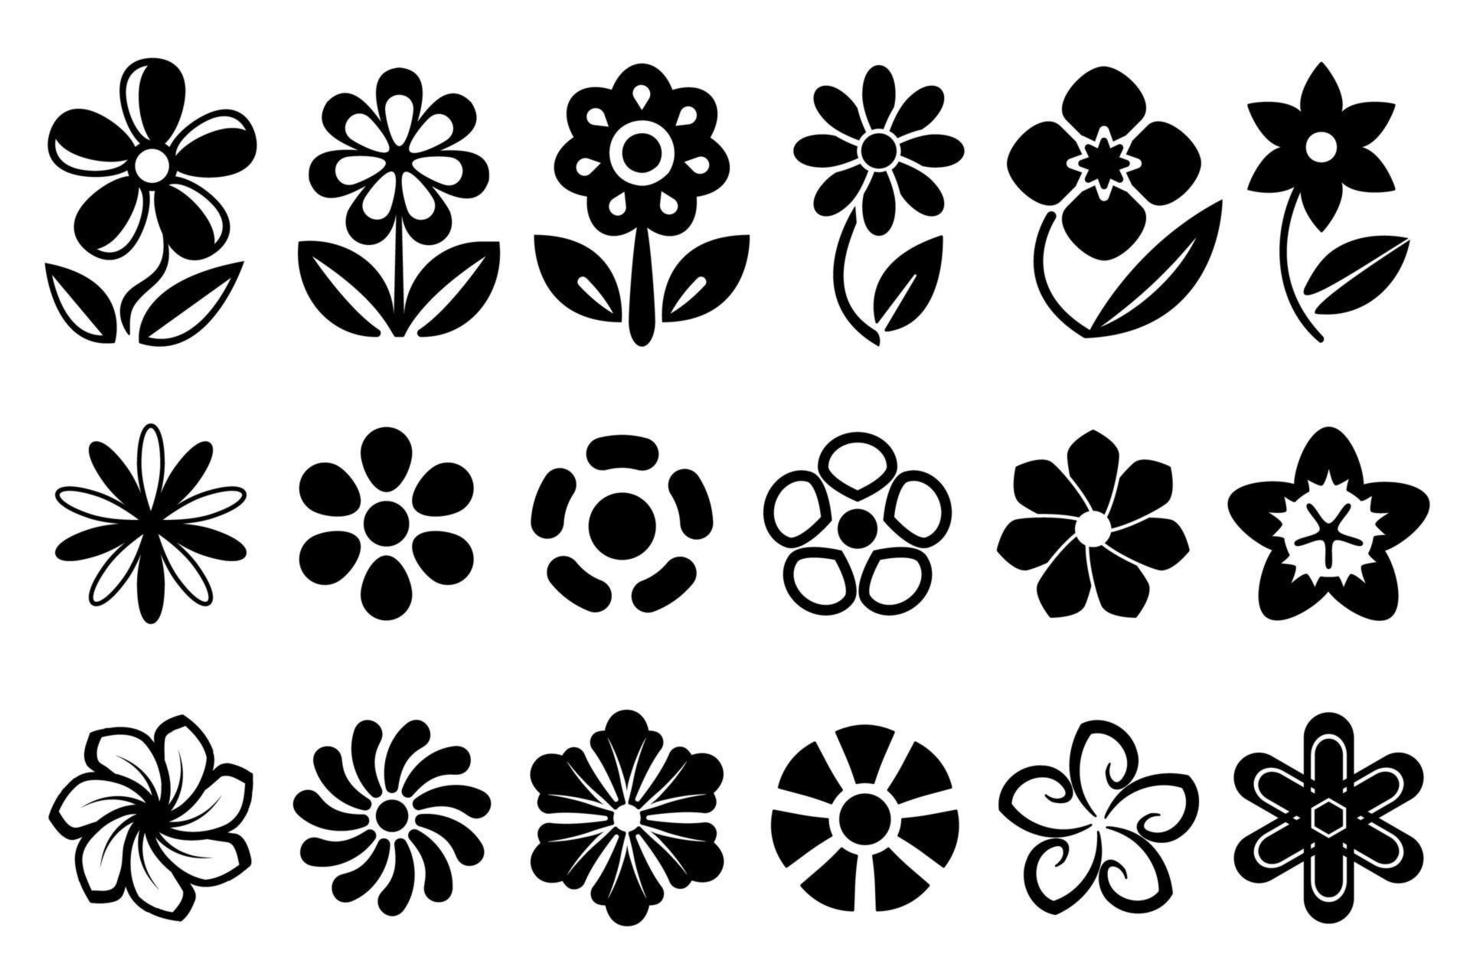 uppsättning av blommiga element, svarta platta blommor isolerad på vit bakgrund. abstrakt blomma ikoner, stiliserad blomsterdekoration. platta blommönster för att skapa logotyper, inbjudningar, mönster, vykort, vektor